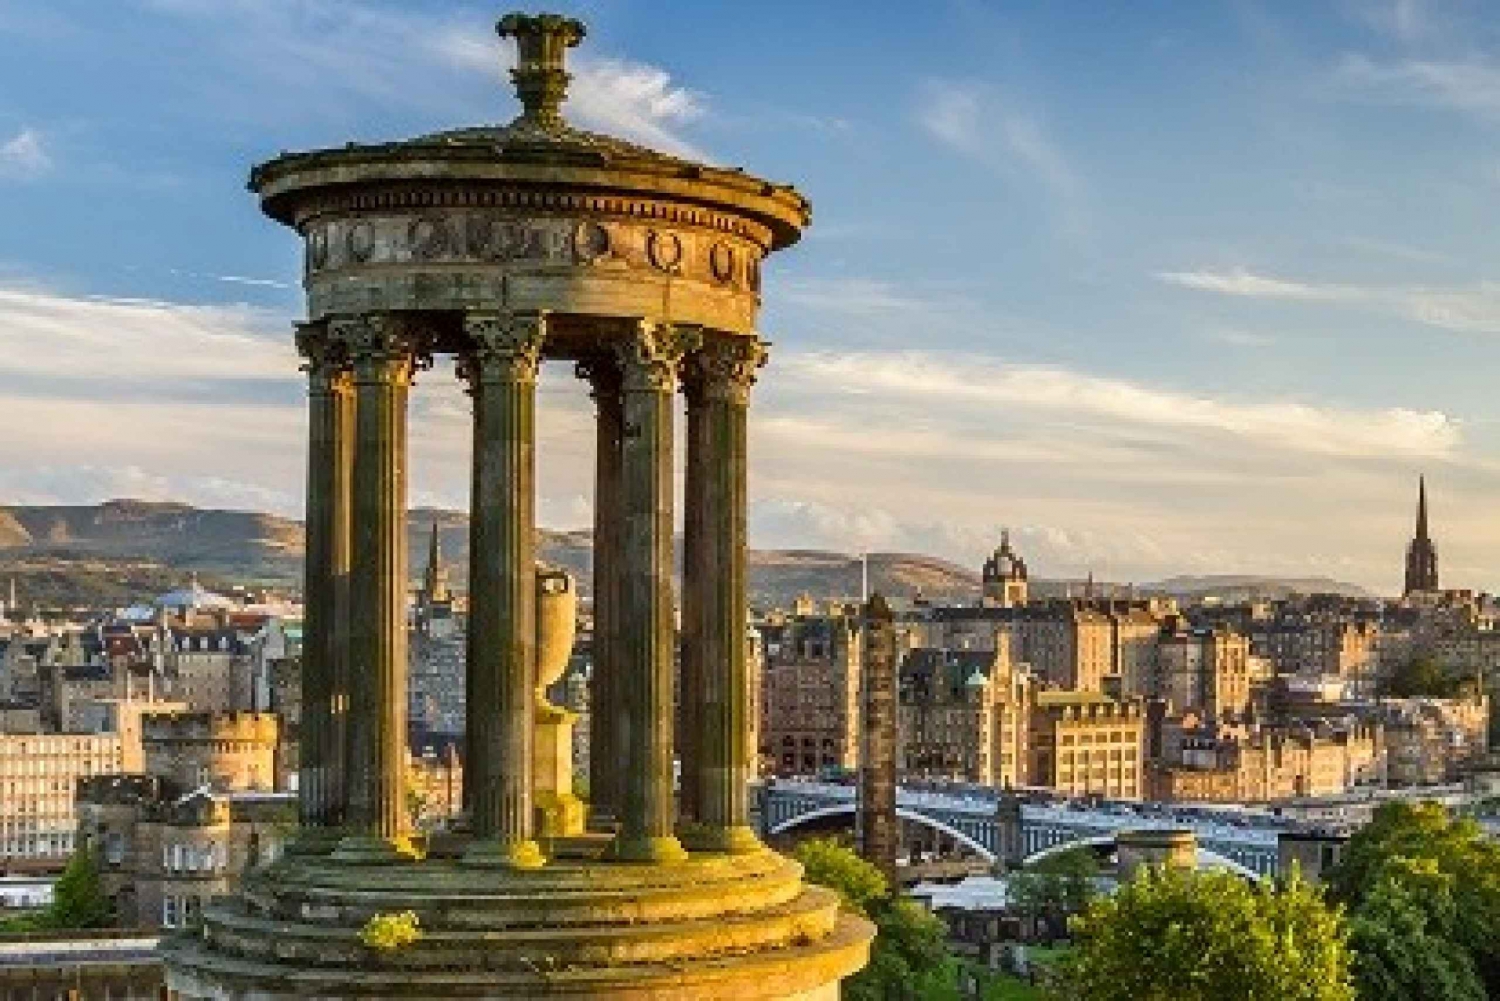 Edinburgh: Heldagsutflykt till stadens centrum på land